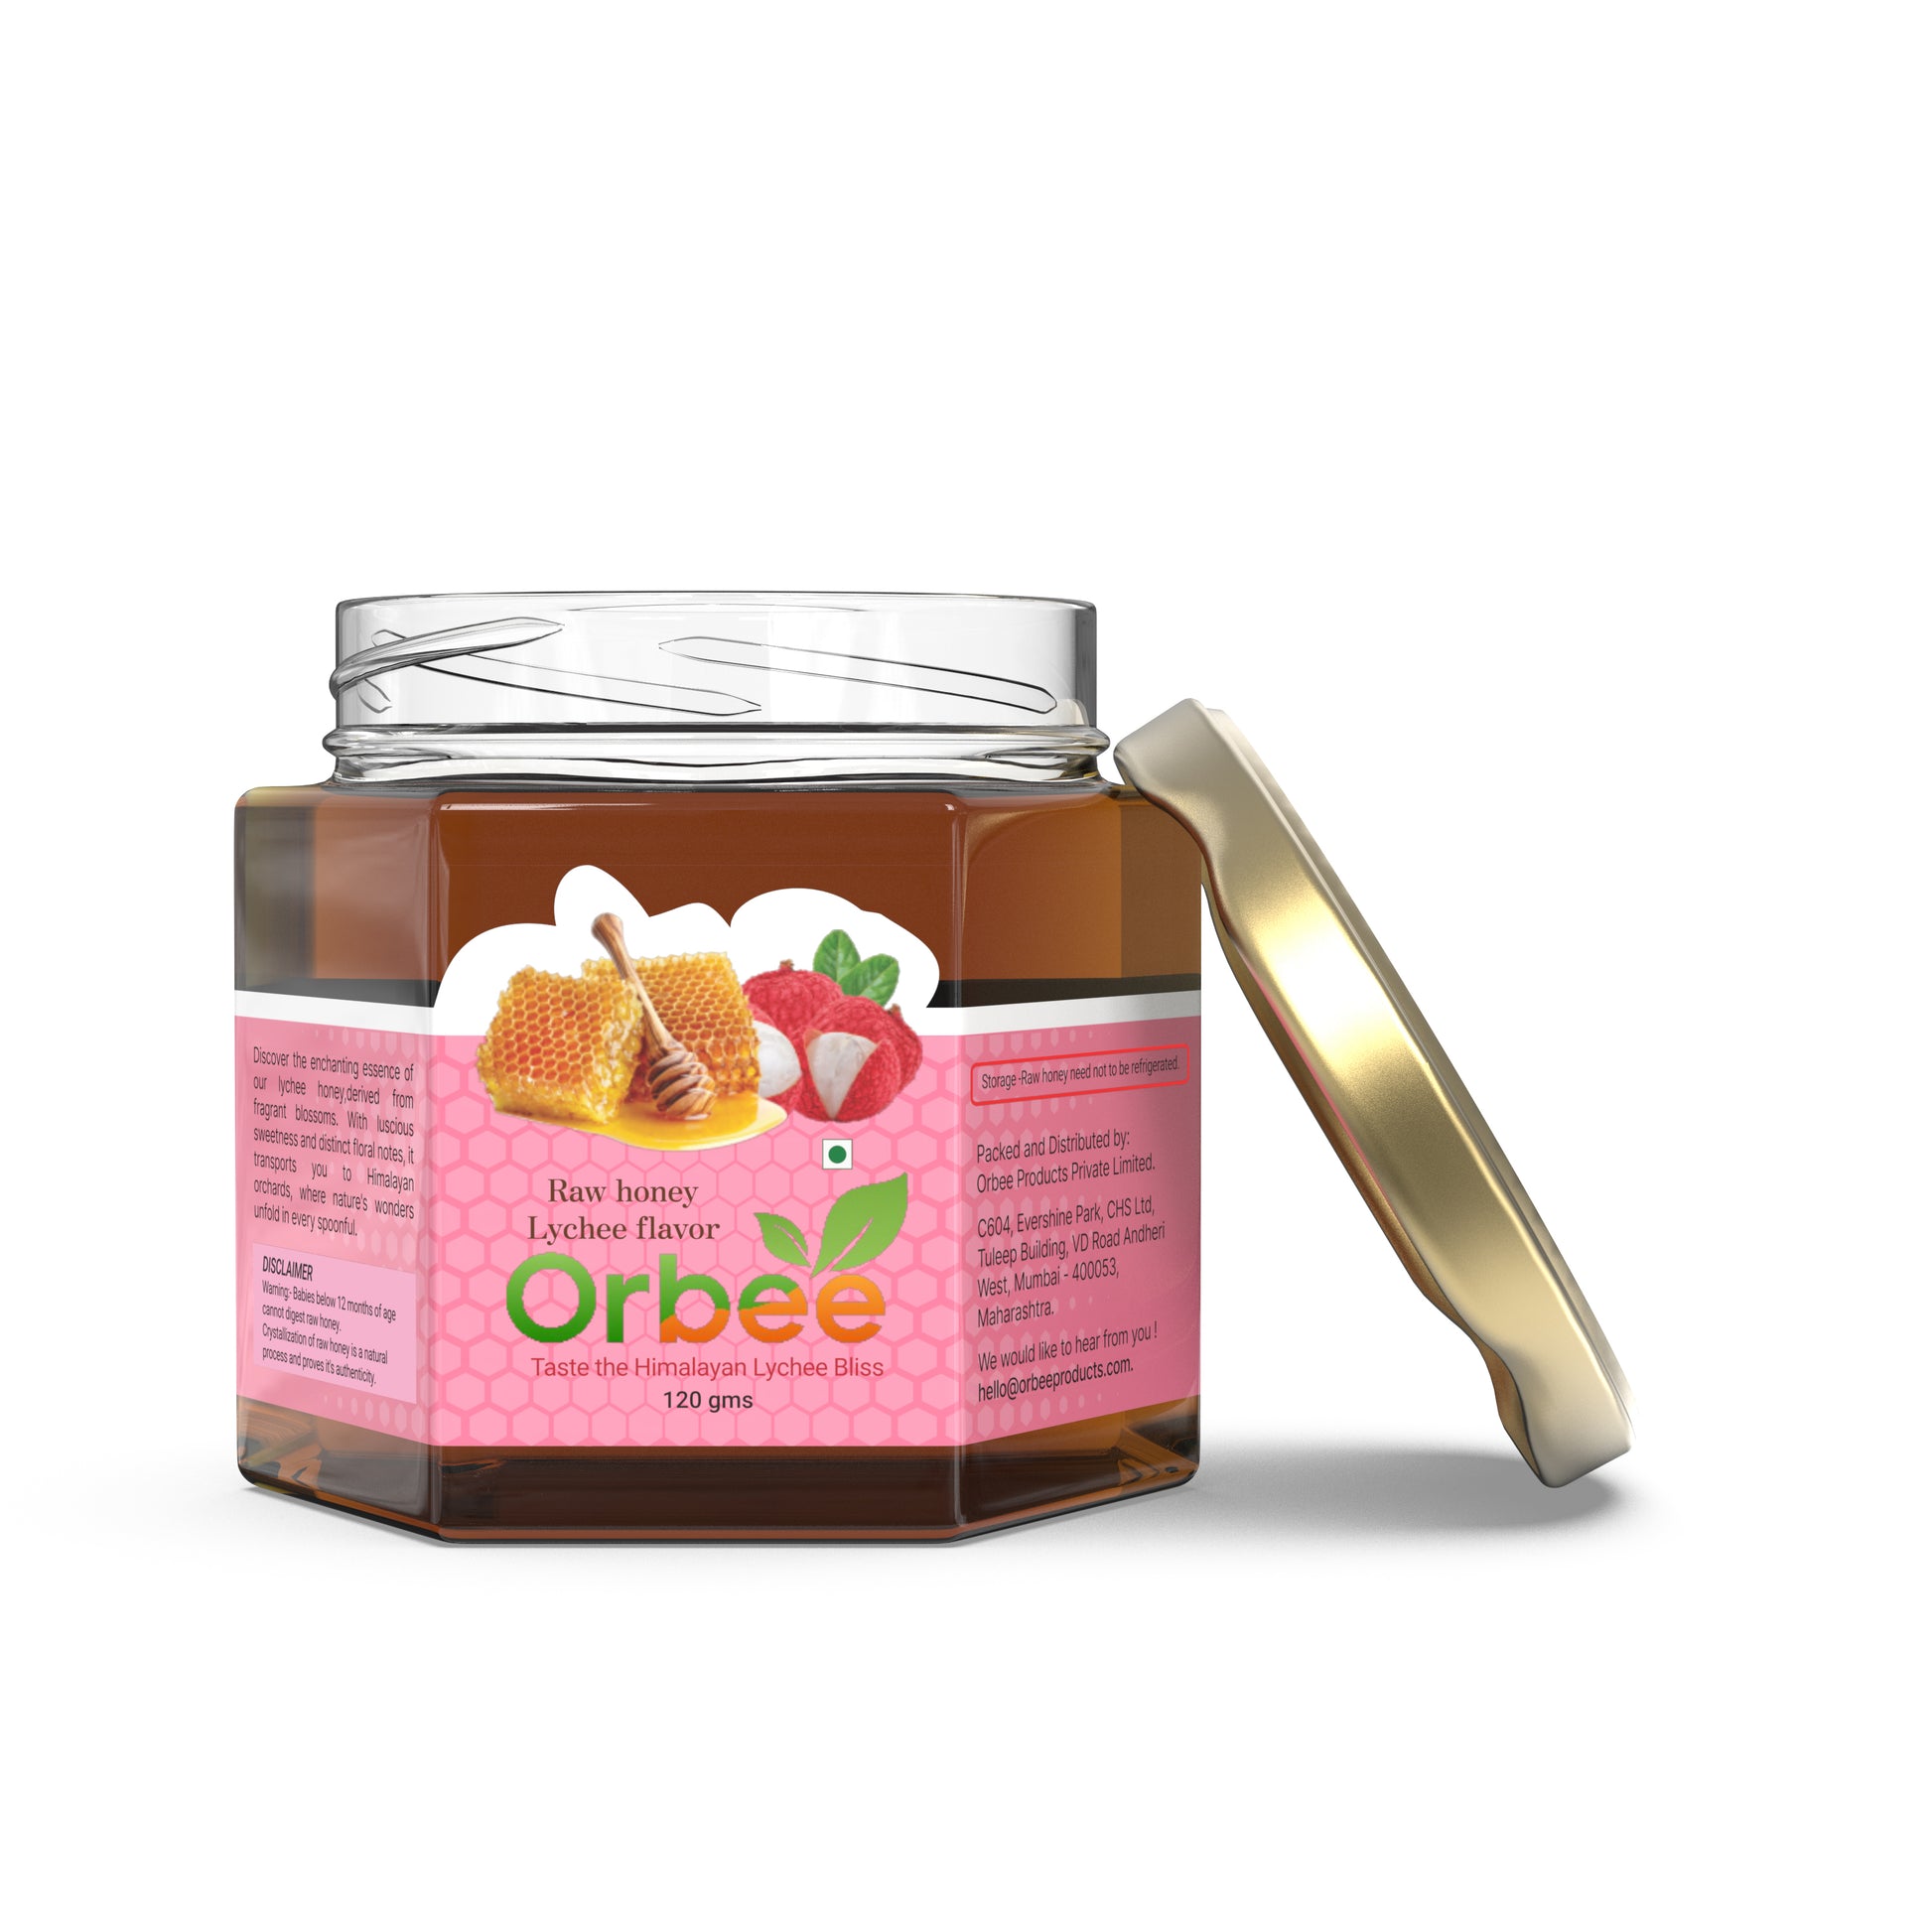 Orbee litchi honey